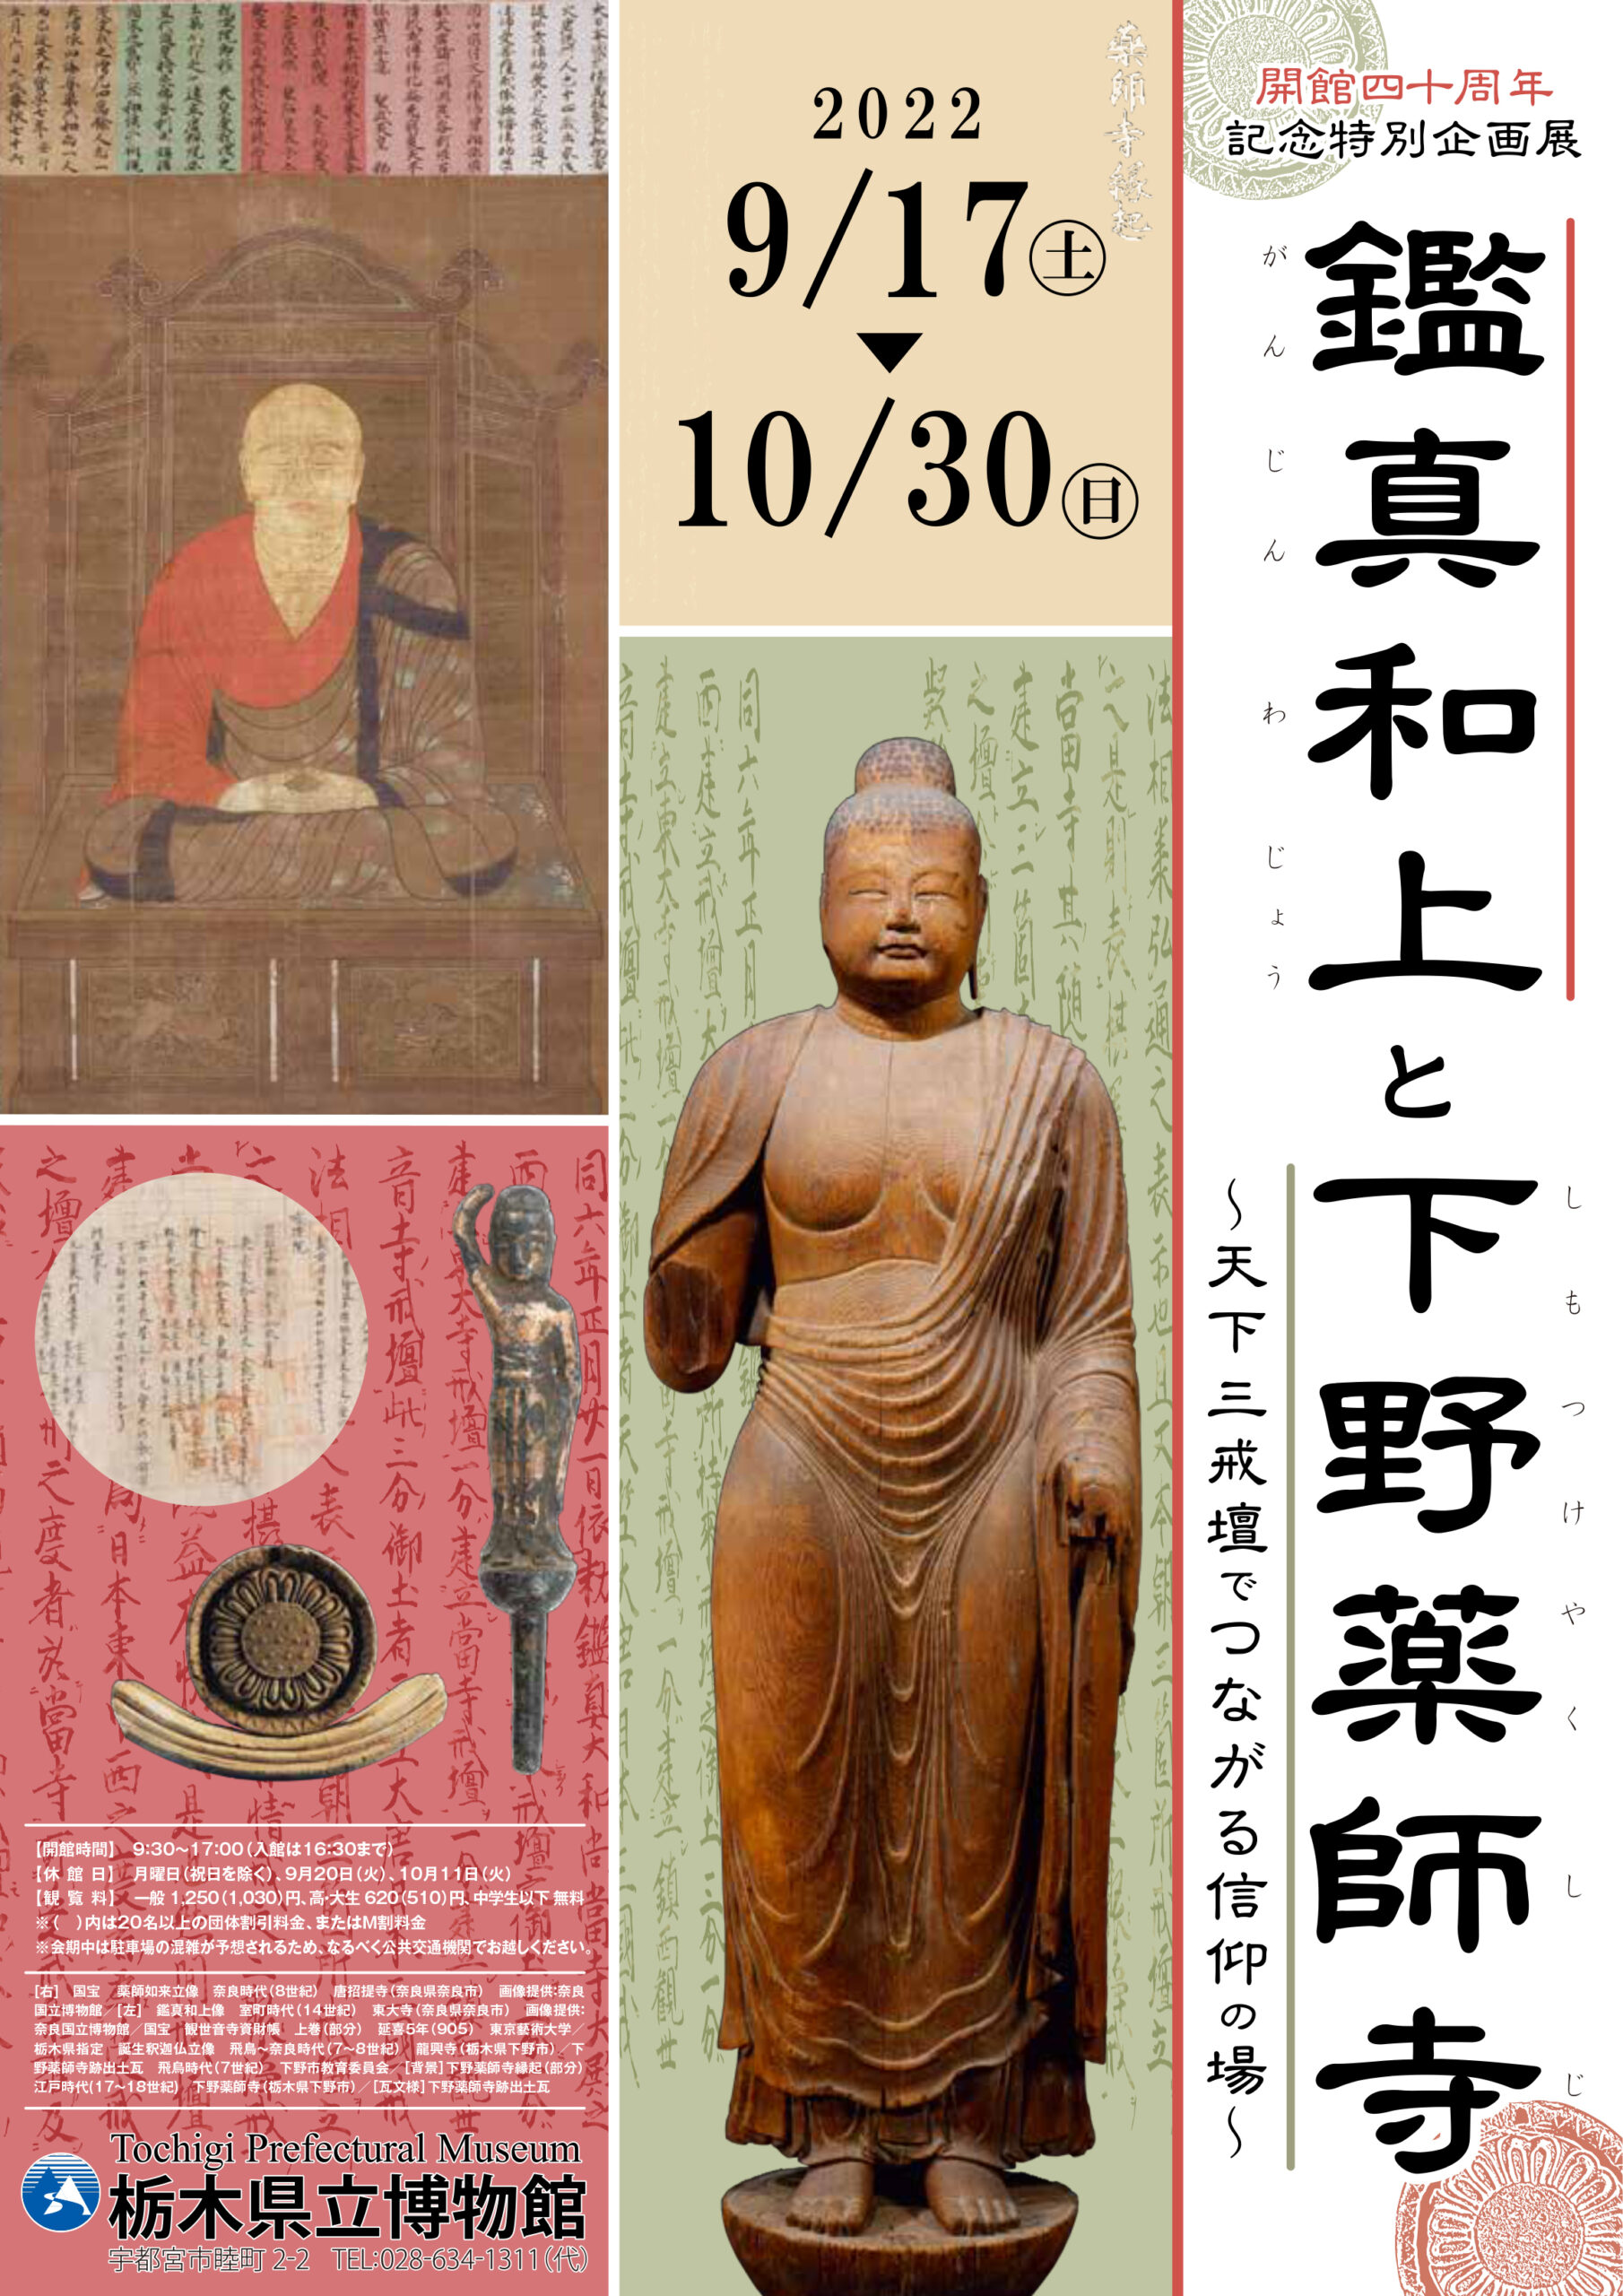 栃木県立博物館 展示のお知らせ | 【公式】仏像彫刻・修復家 宮木菜月